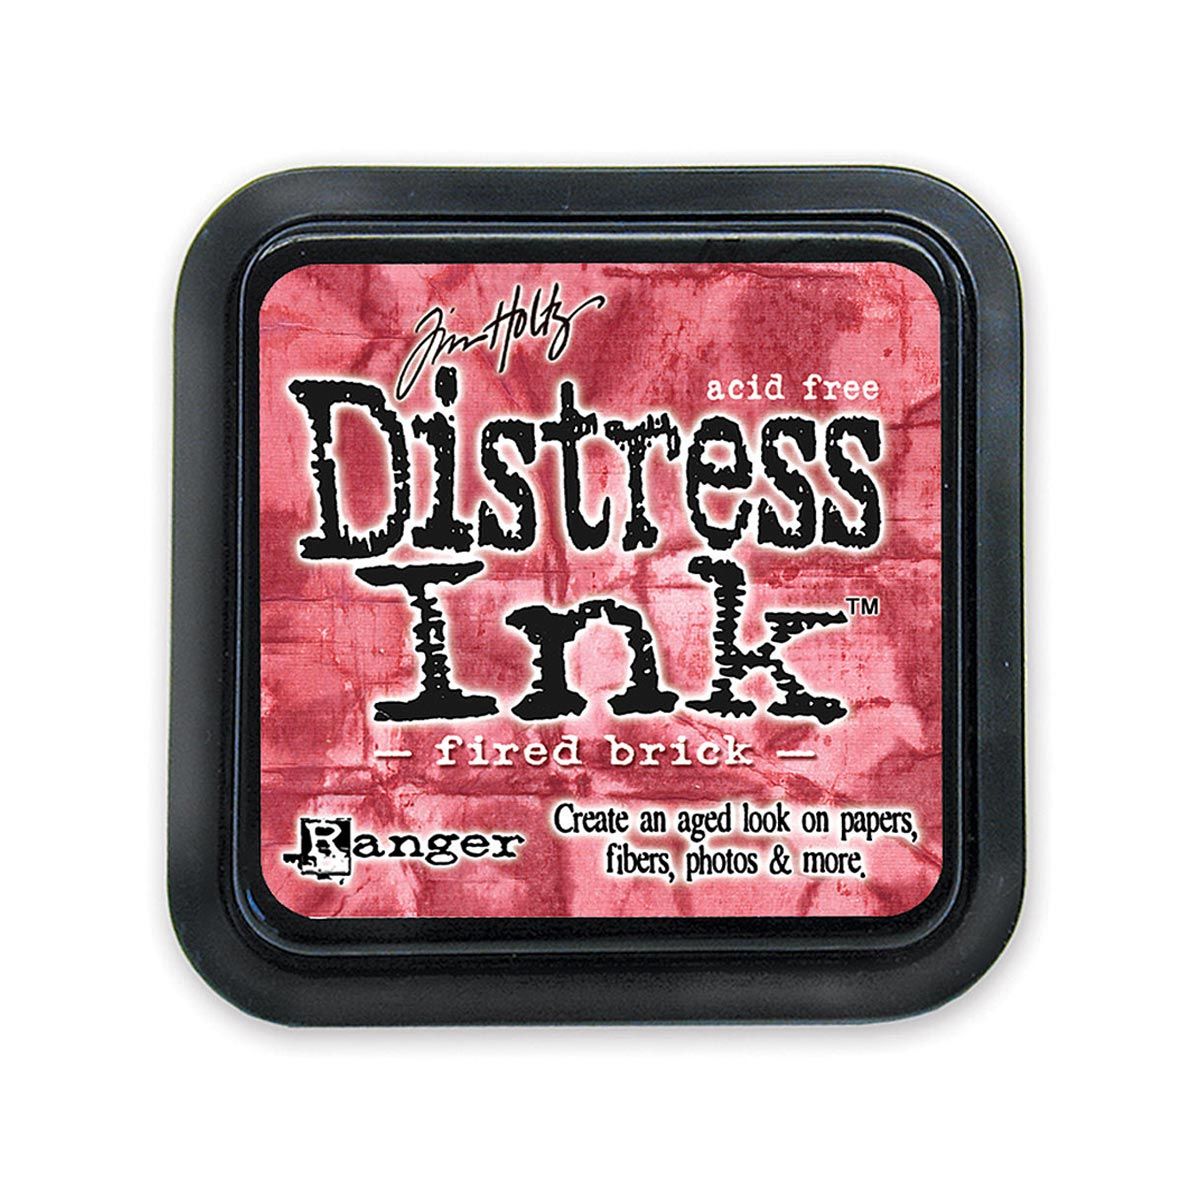 Tim Holtz Mini Distress Ink Pad, Fired Brick 1x1-in